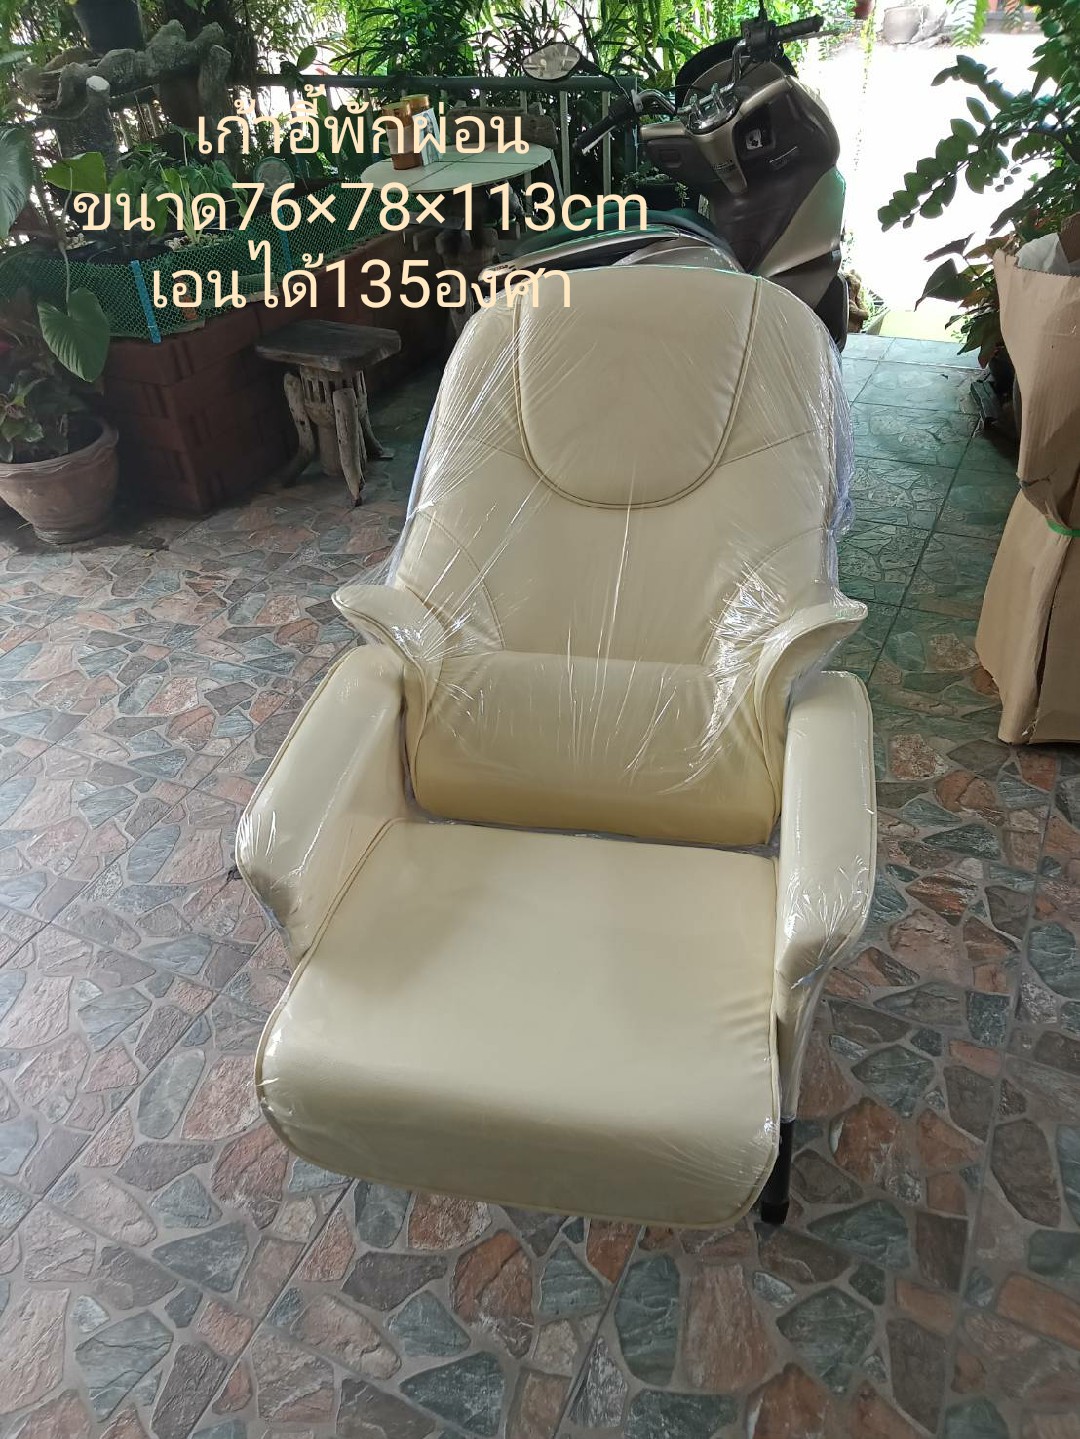 เก้าอี้พักผ่อนขนาด76x78x113cmเอนได้135องศา/นางฟ้าช้อป/vk.shop